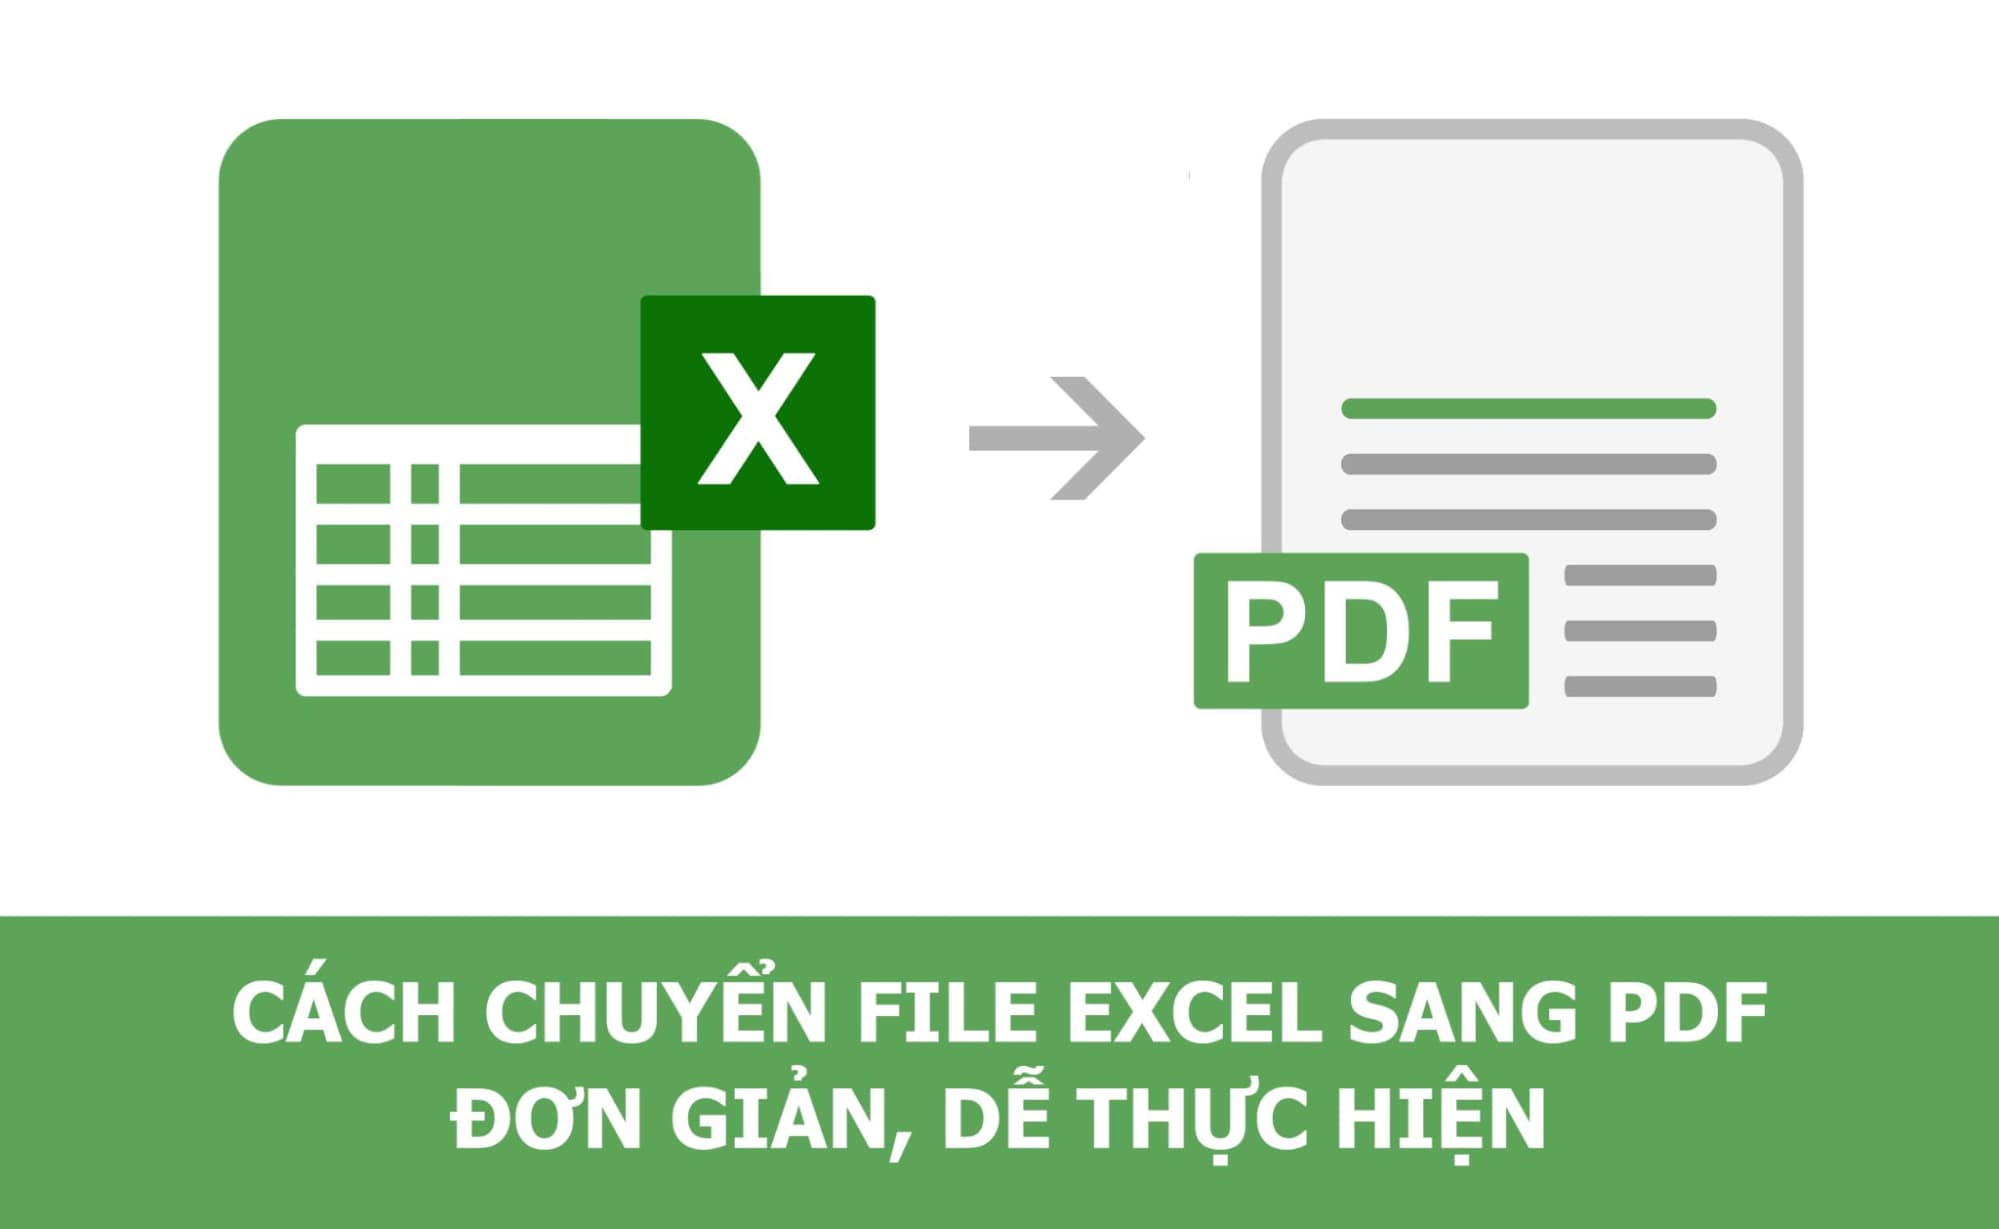 Chi tiết các cách chuyển Excel sang PDF cực đơn giản